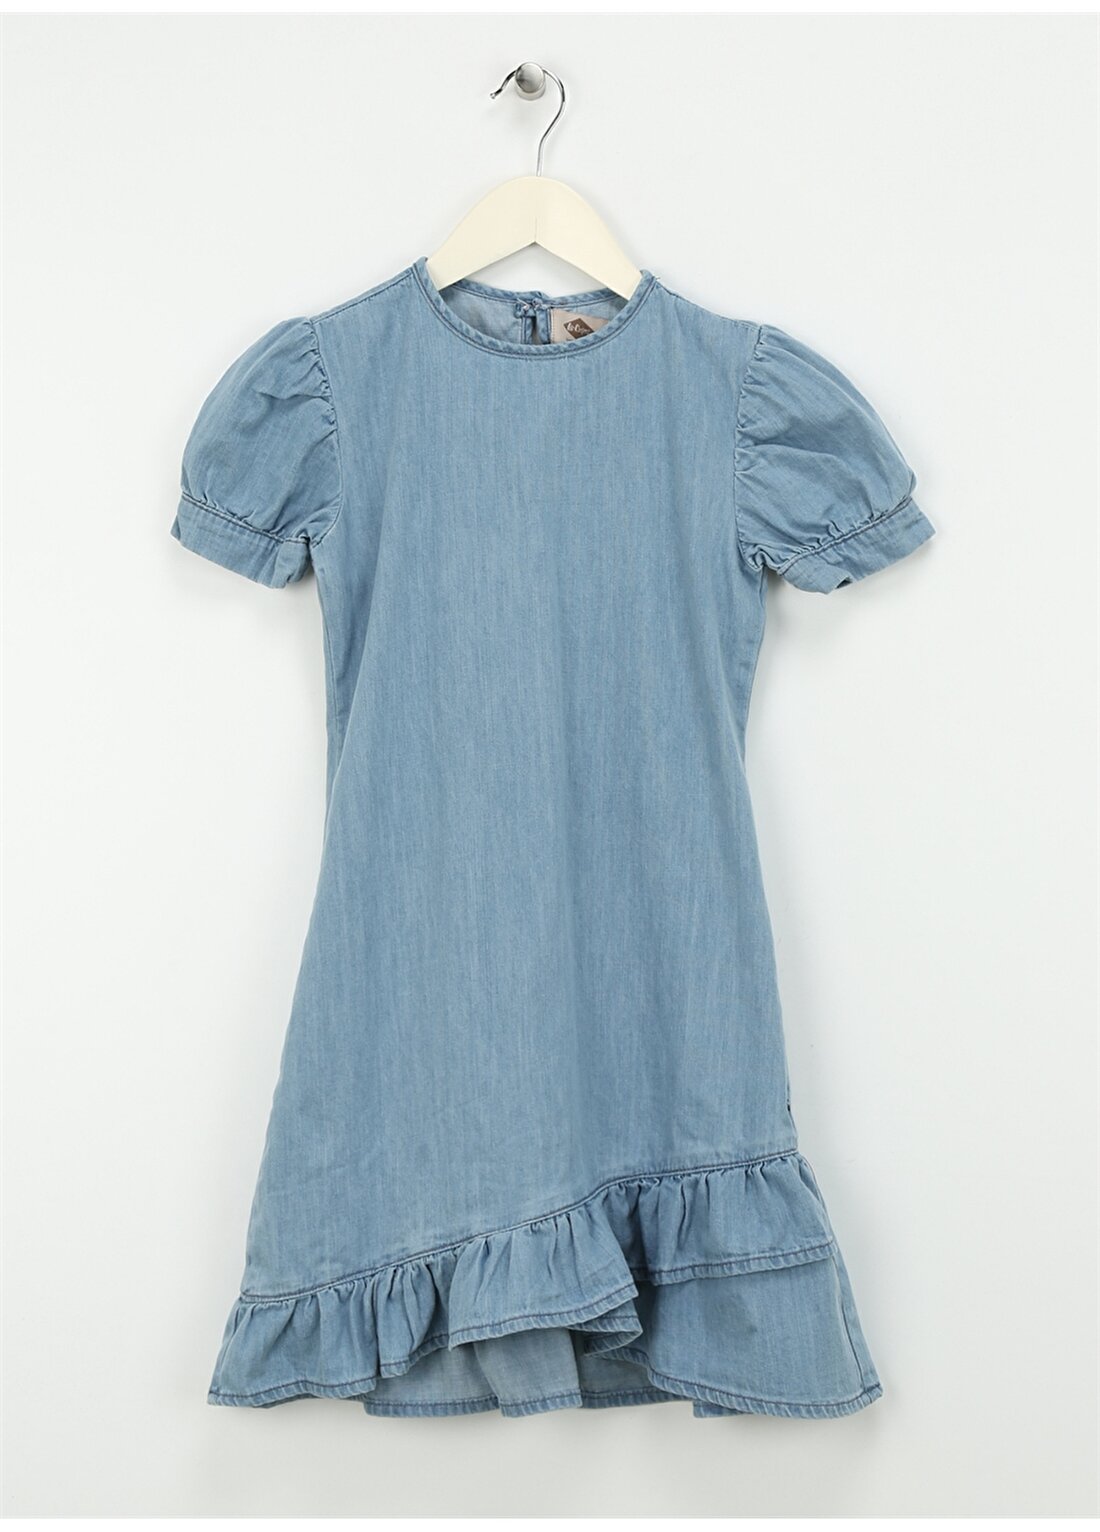 Lee Cooper Düz Açık Mavi Kız Çocuk Standart Elbise 242 LCG 144003 CORDELLA 1 LIGHT BLU